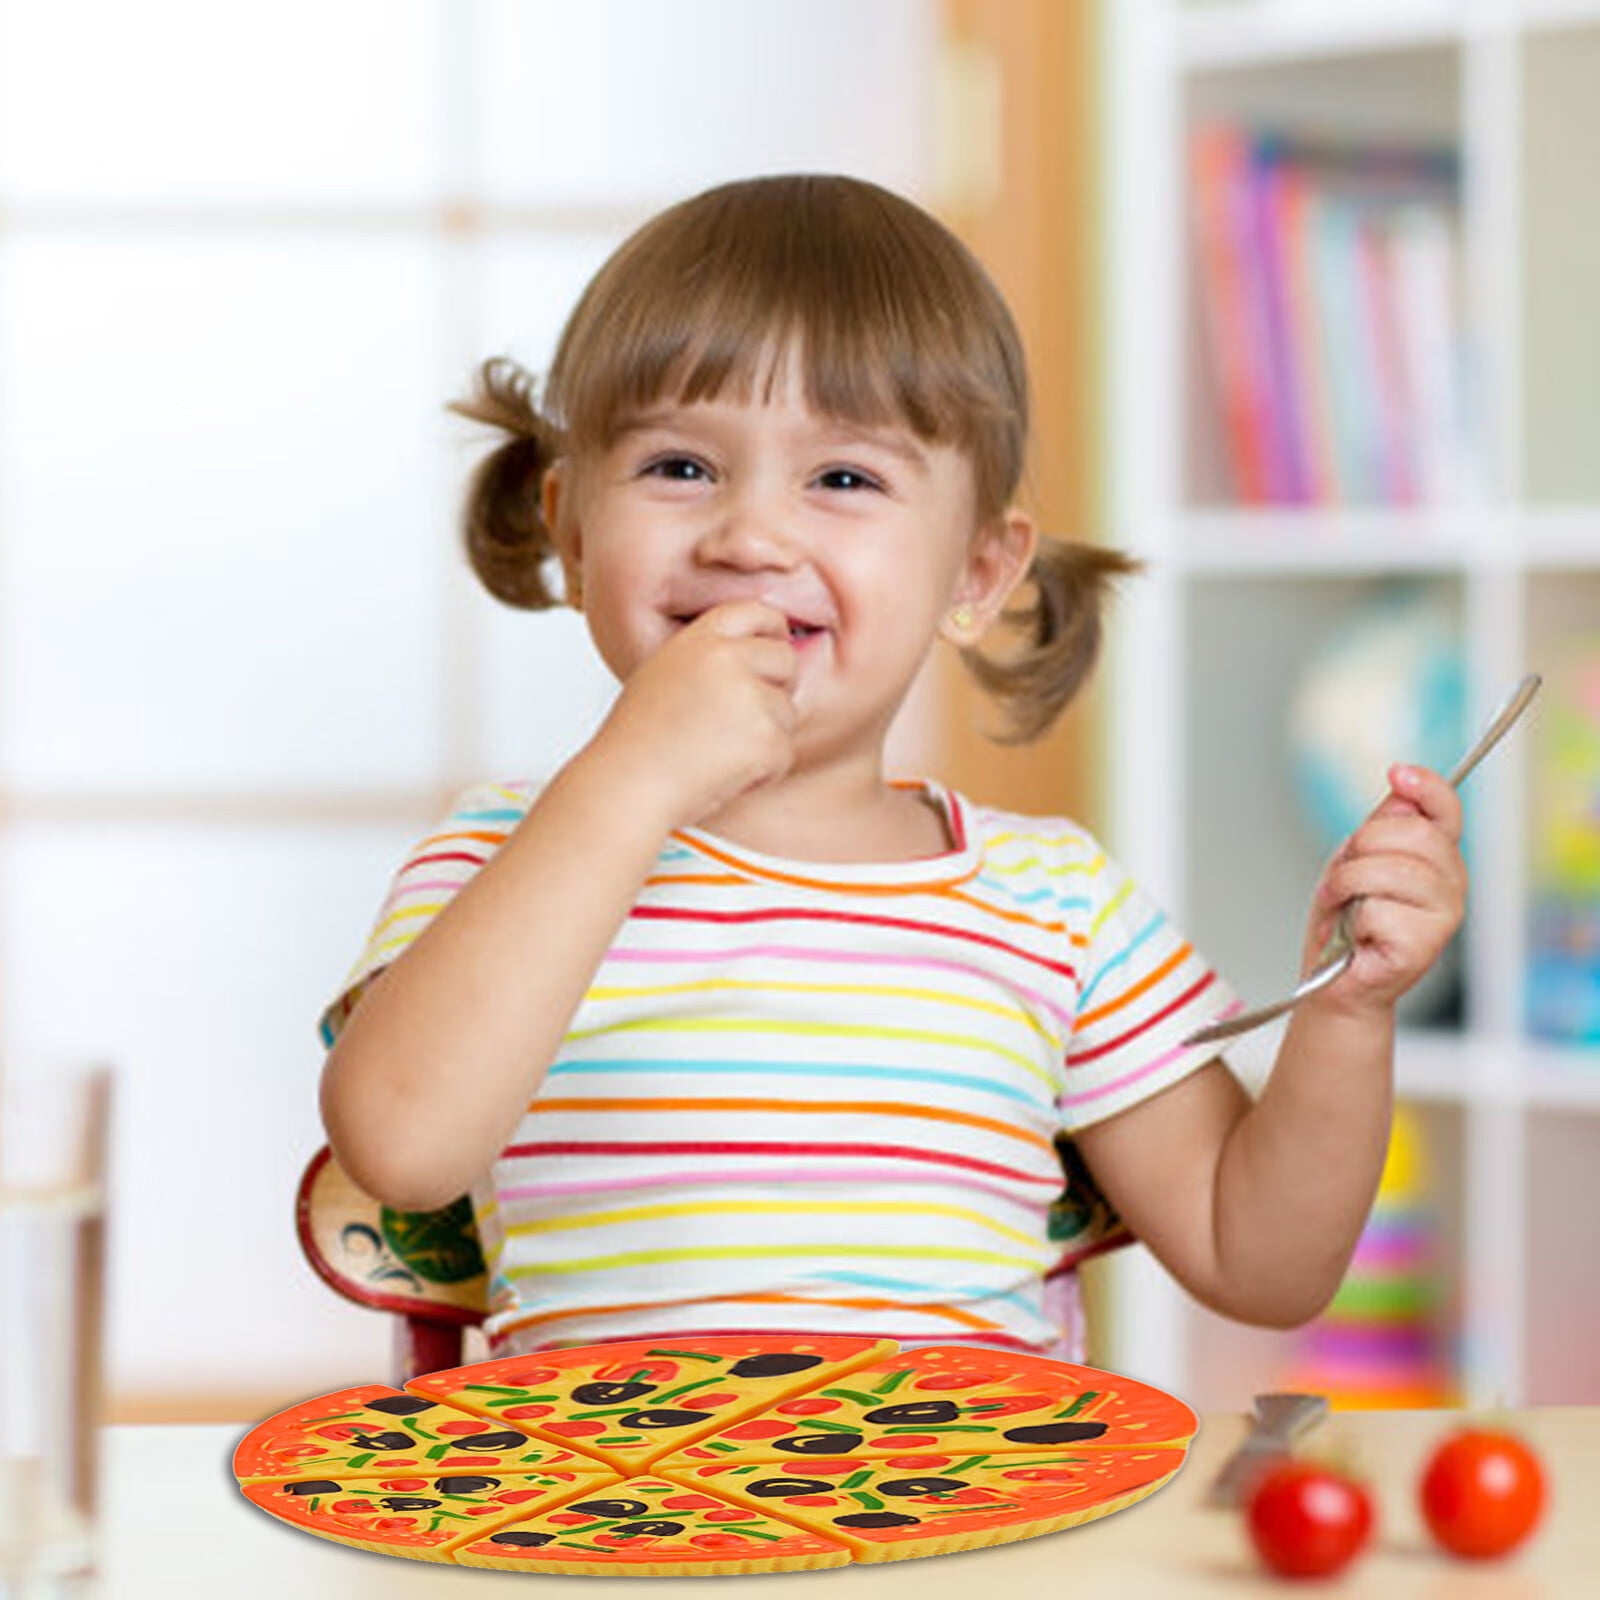 magdum Cuisine Enfant Pizza Jouet - 48 frigo Enfant - Cuisine Enfant Fille  - Kit Cuisine Enfant - Jouet Cuisine Enfant - Pizz